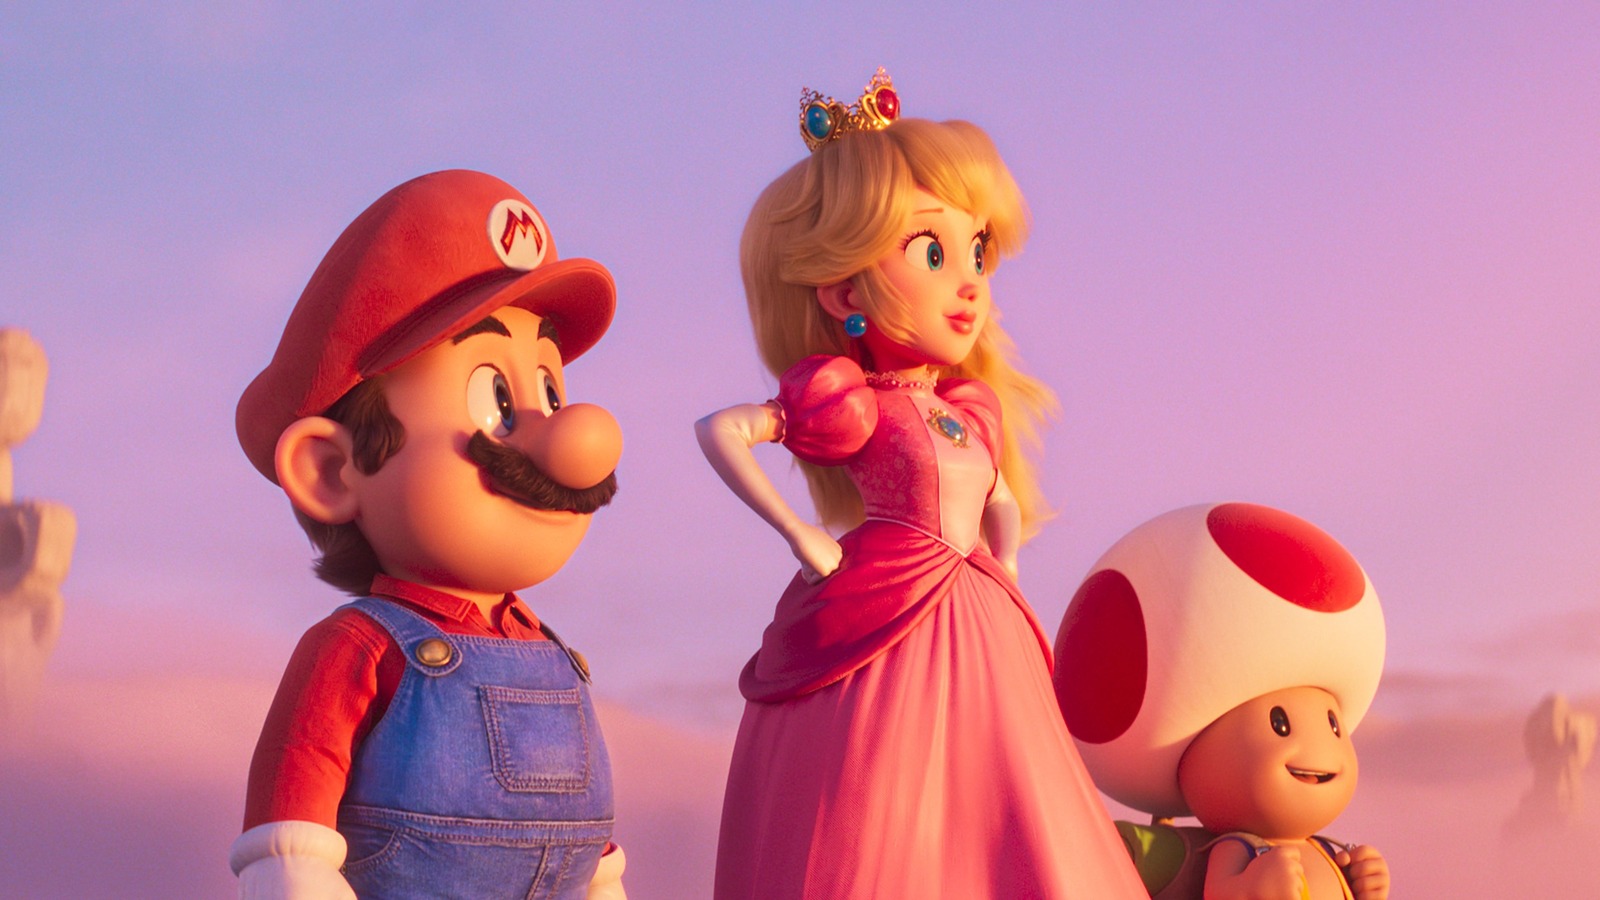 Super Mario Bros. Movie Heading to Netflix in December! Details on